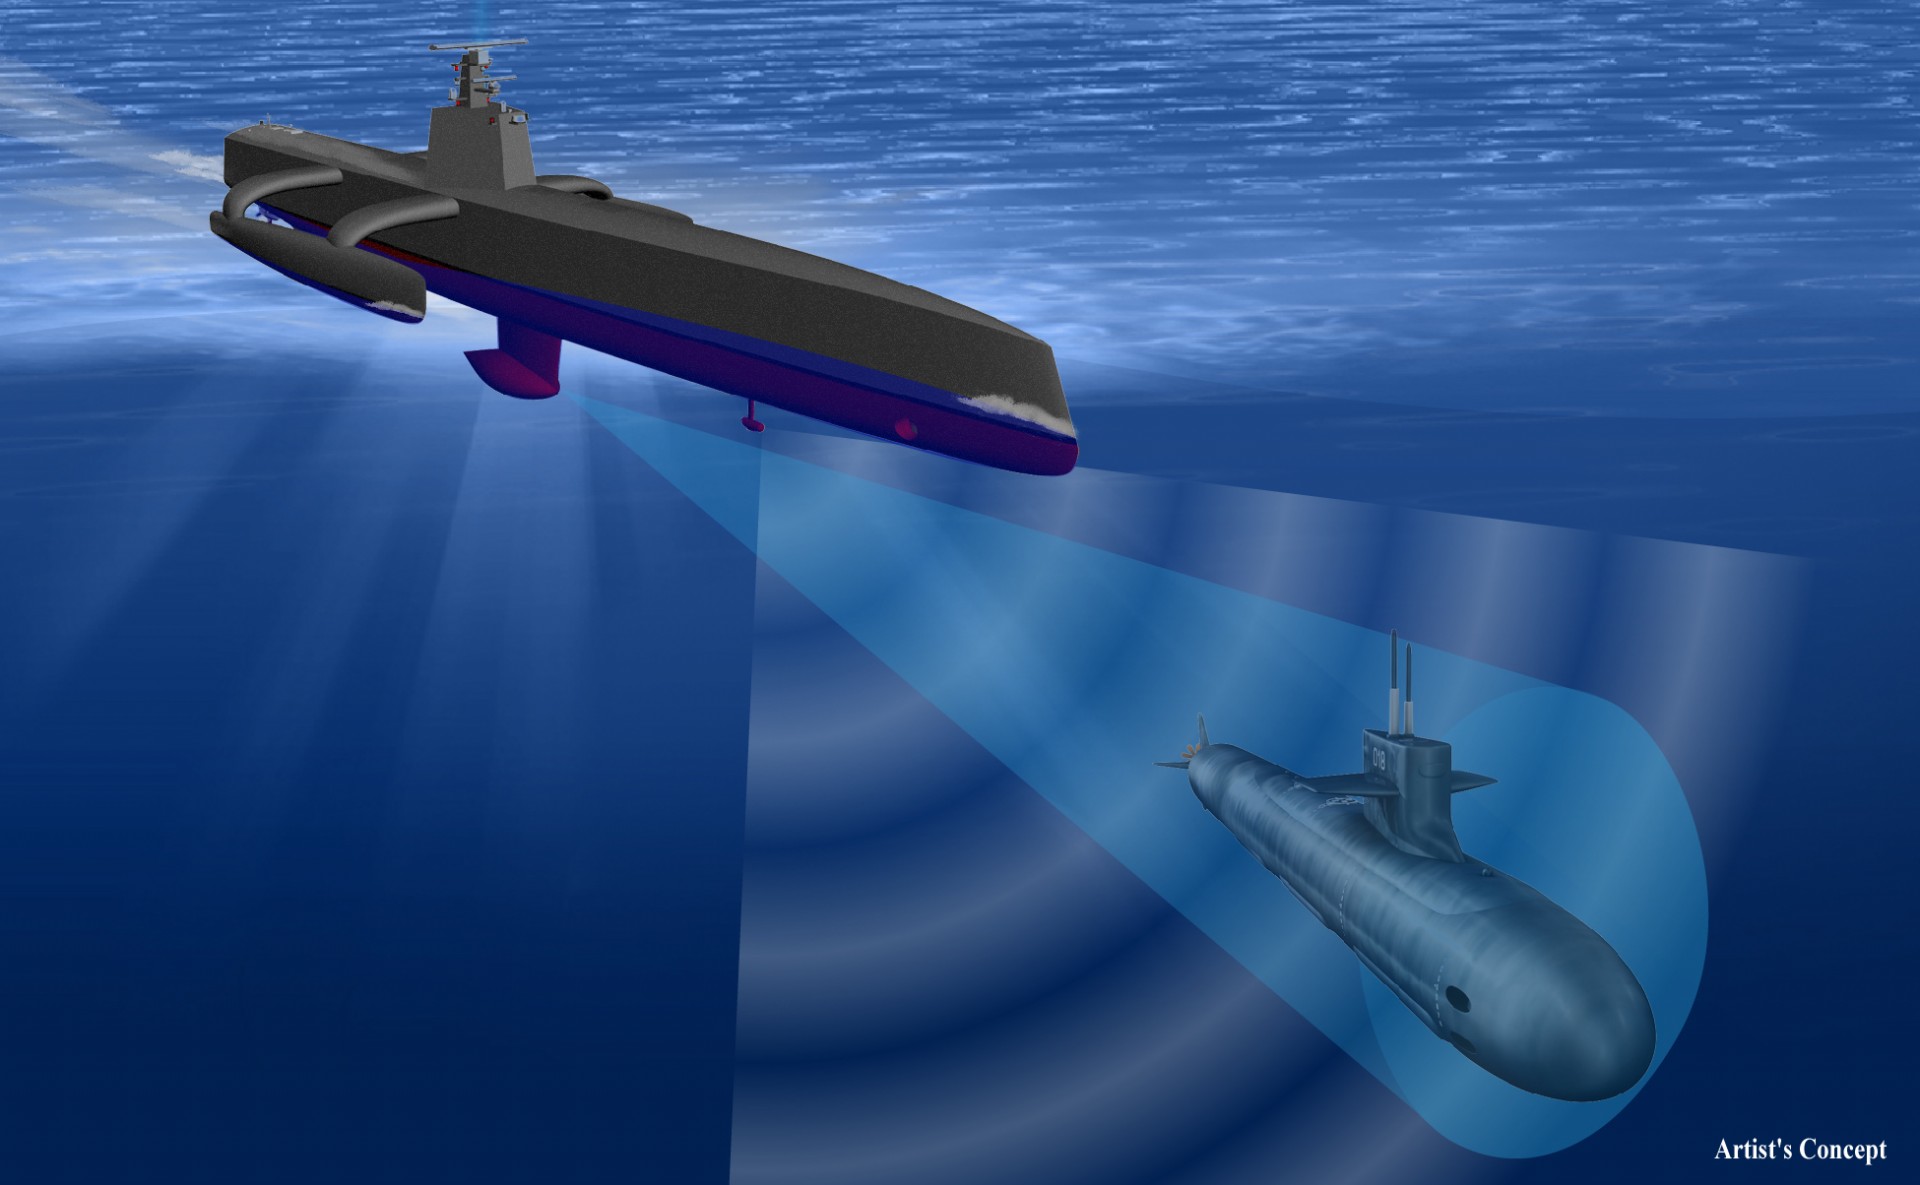 Raytheon zbuduje sonar dla dronu ACTUV opracowywanego do zwalczania okrętów podwodnych- fot. DARPA